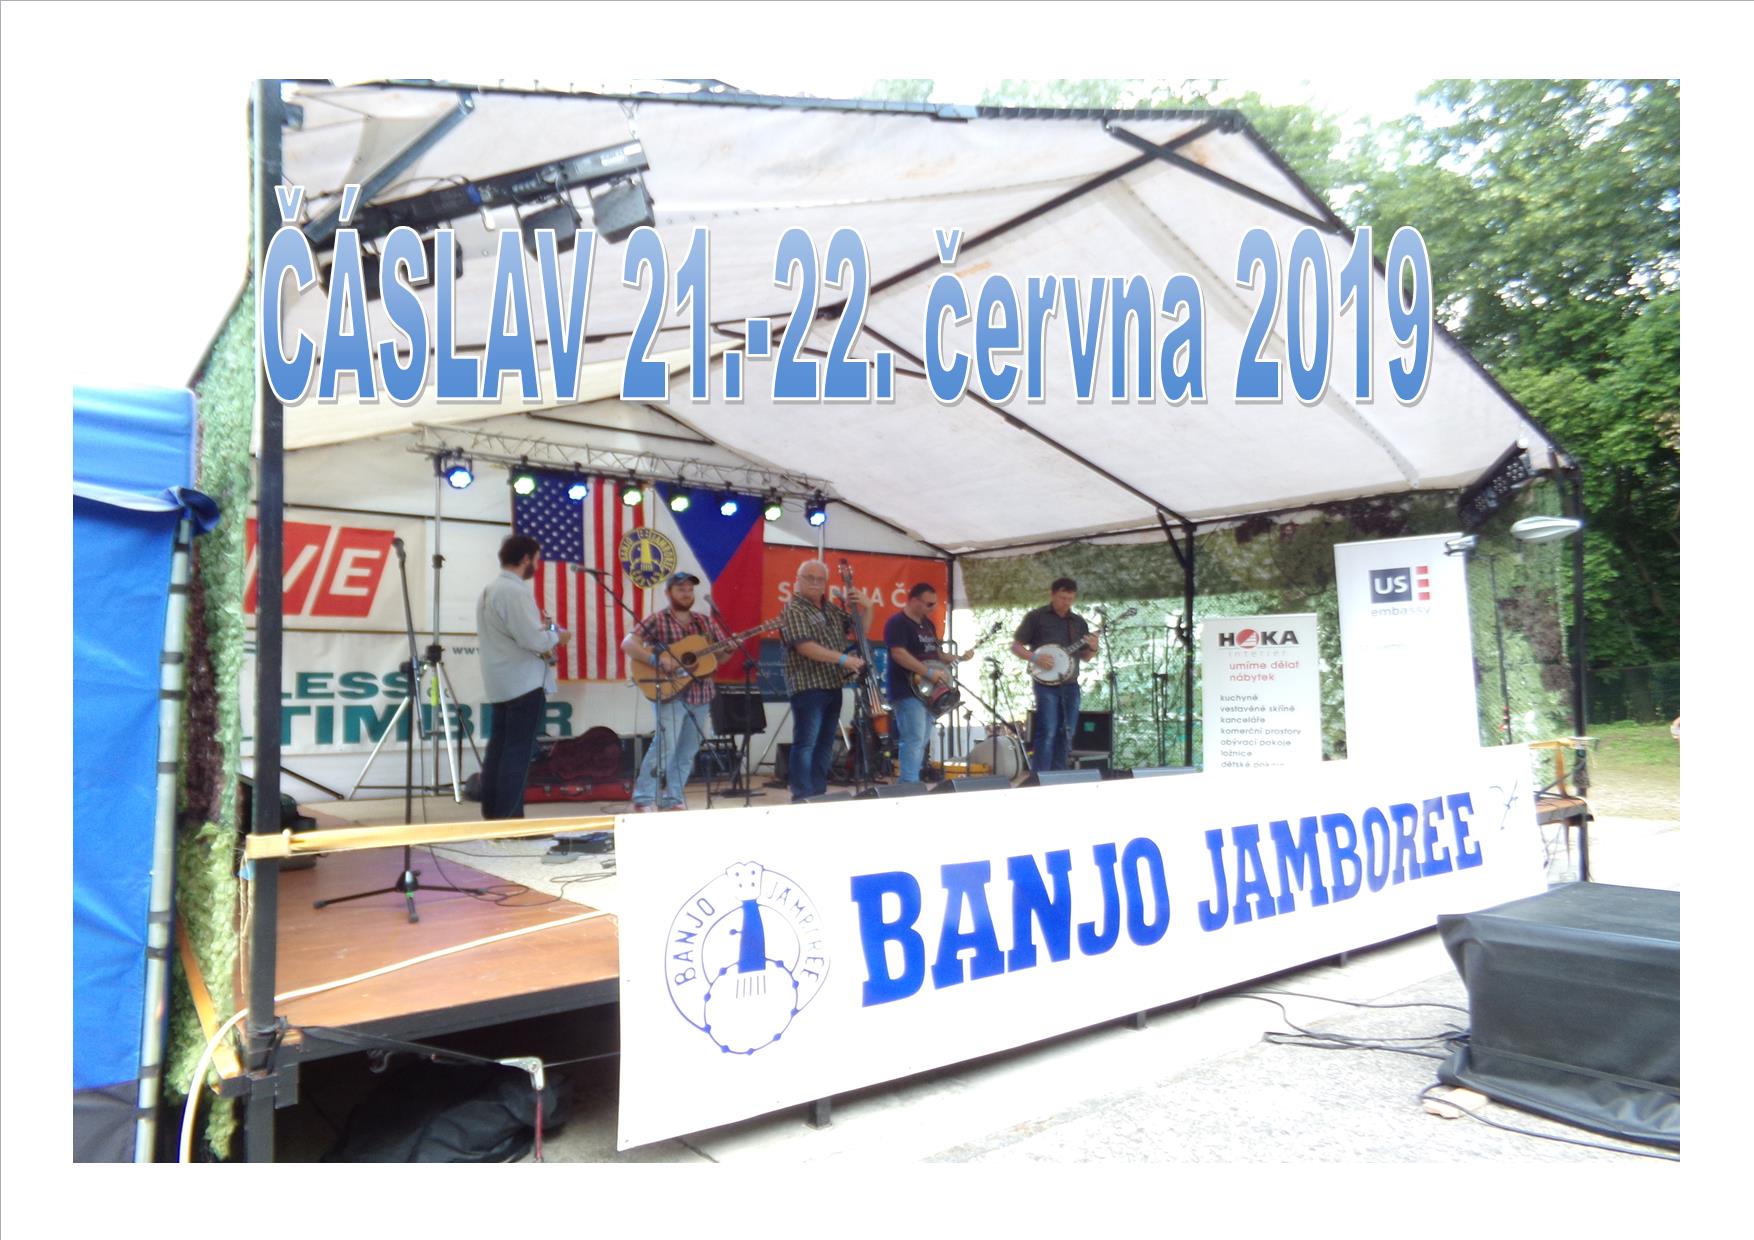 Banjo Jamboree